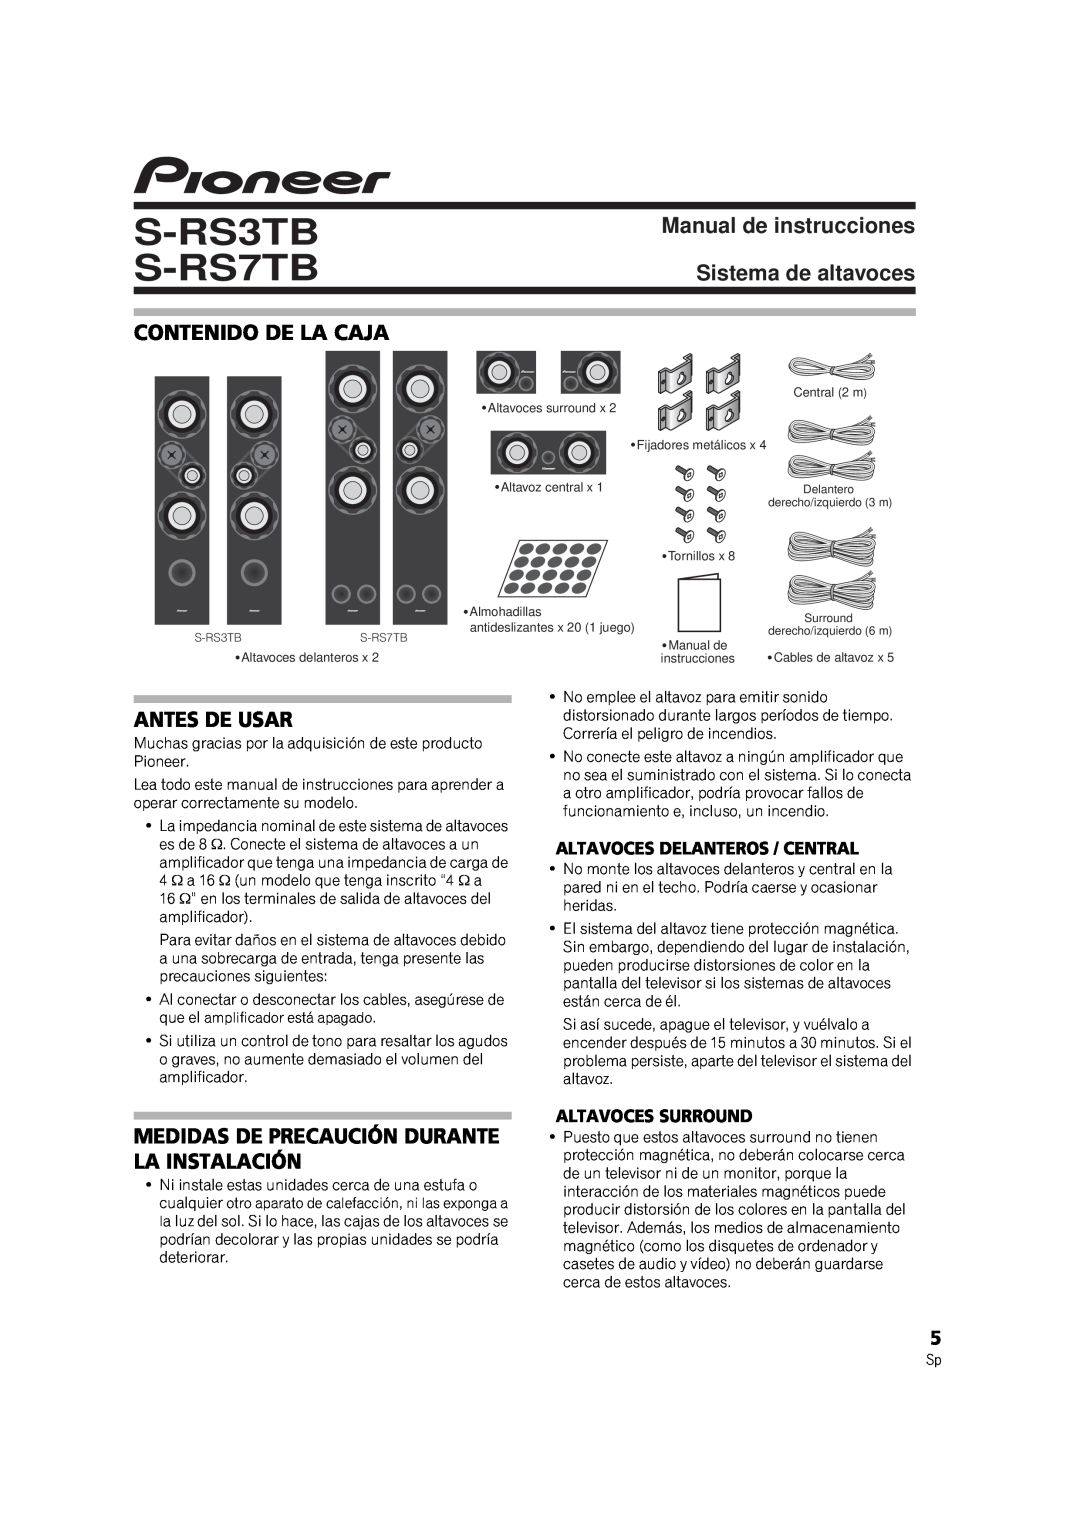 Pioneer S-RS7TB Manual de instrucciones Sistema de altavoces, Contenido De La Caja, Antes De Usar, Altavoces Surround 